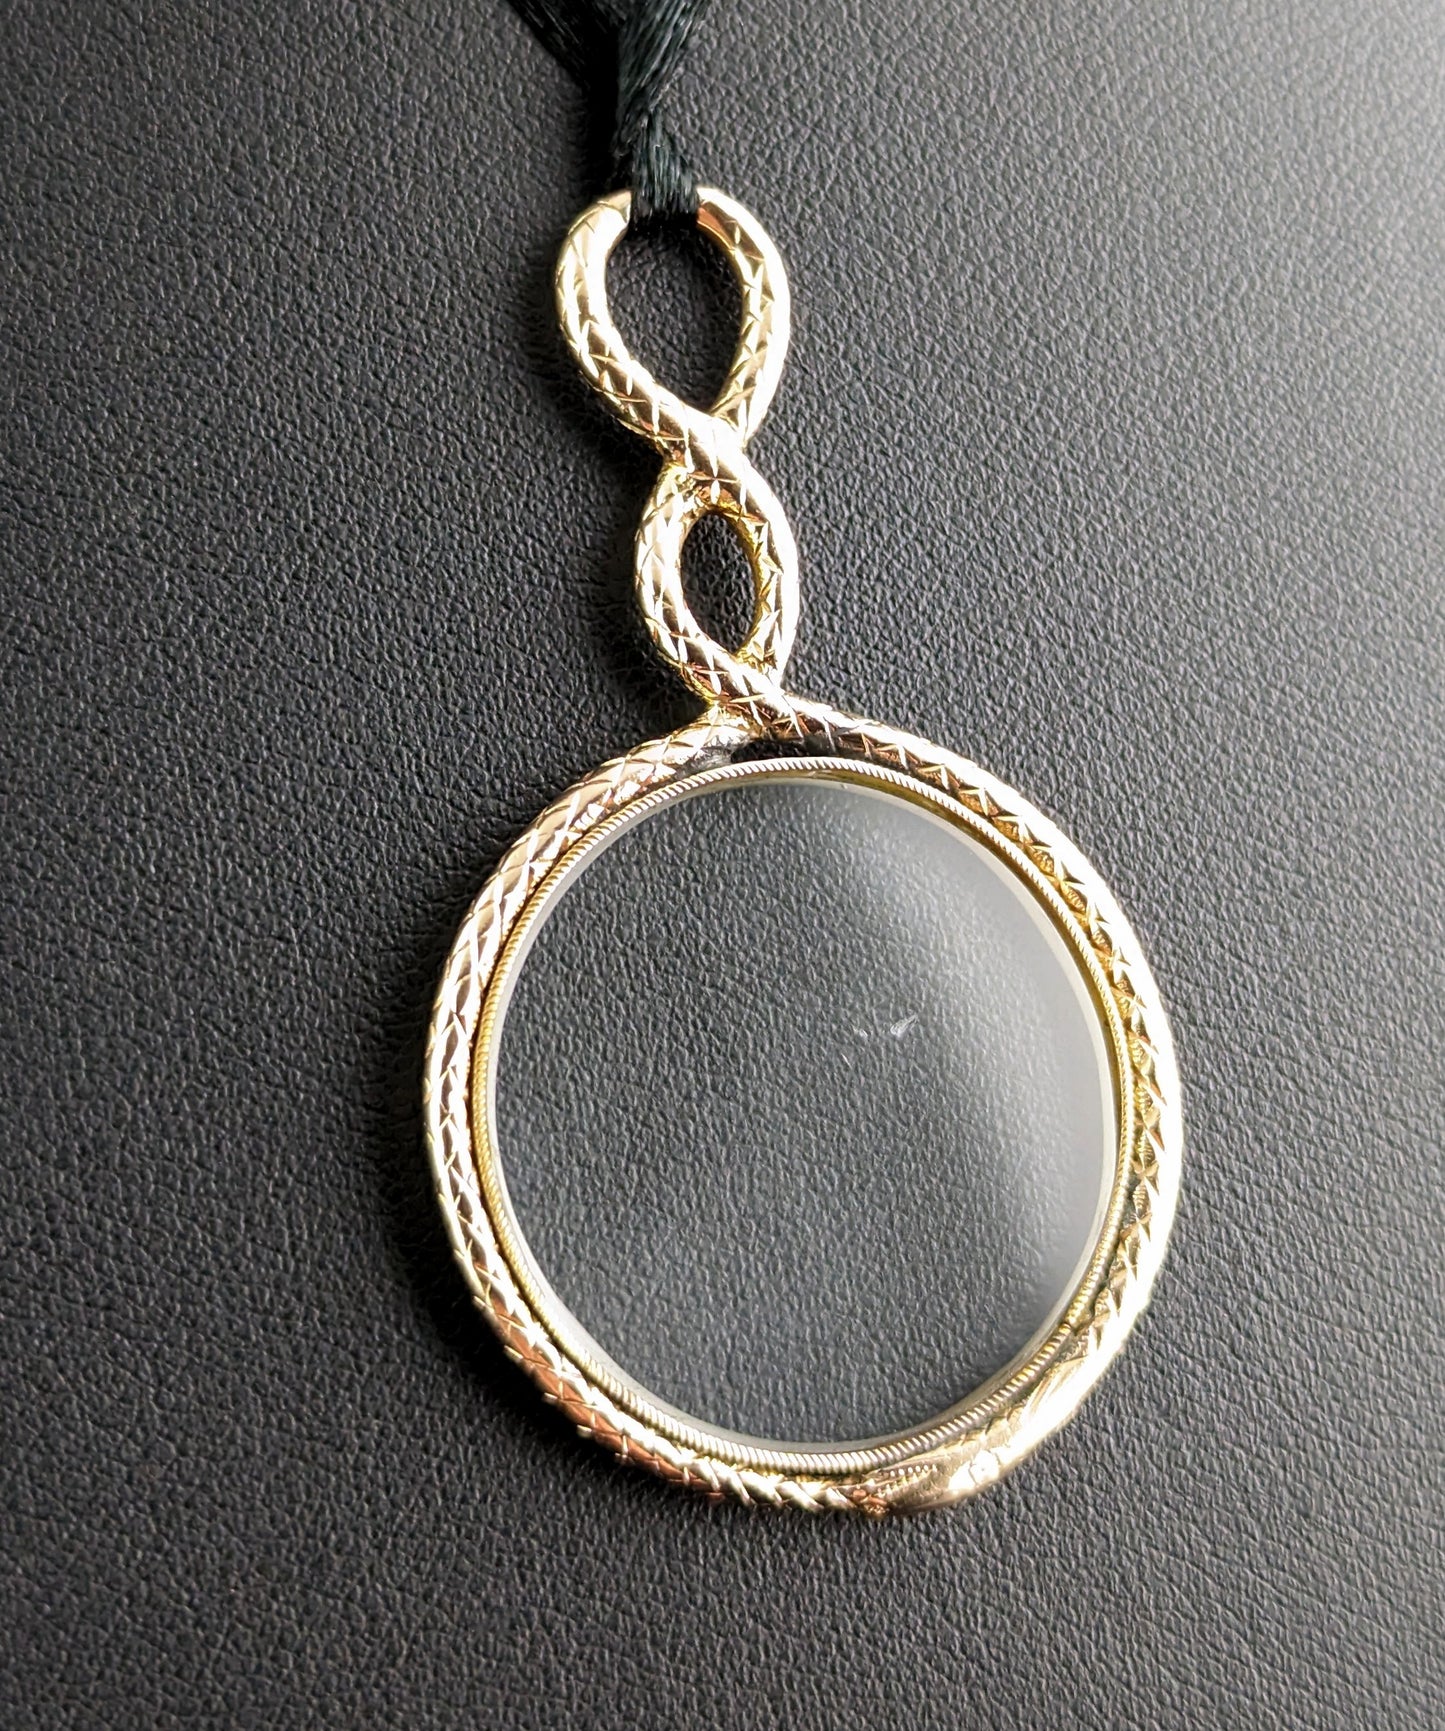 Antique Georgian 15ct gold Ouroboros quizzing glass pendant